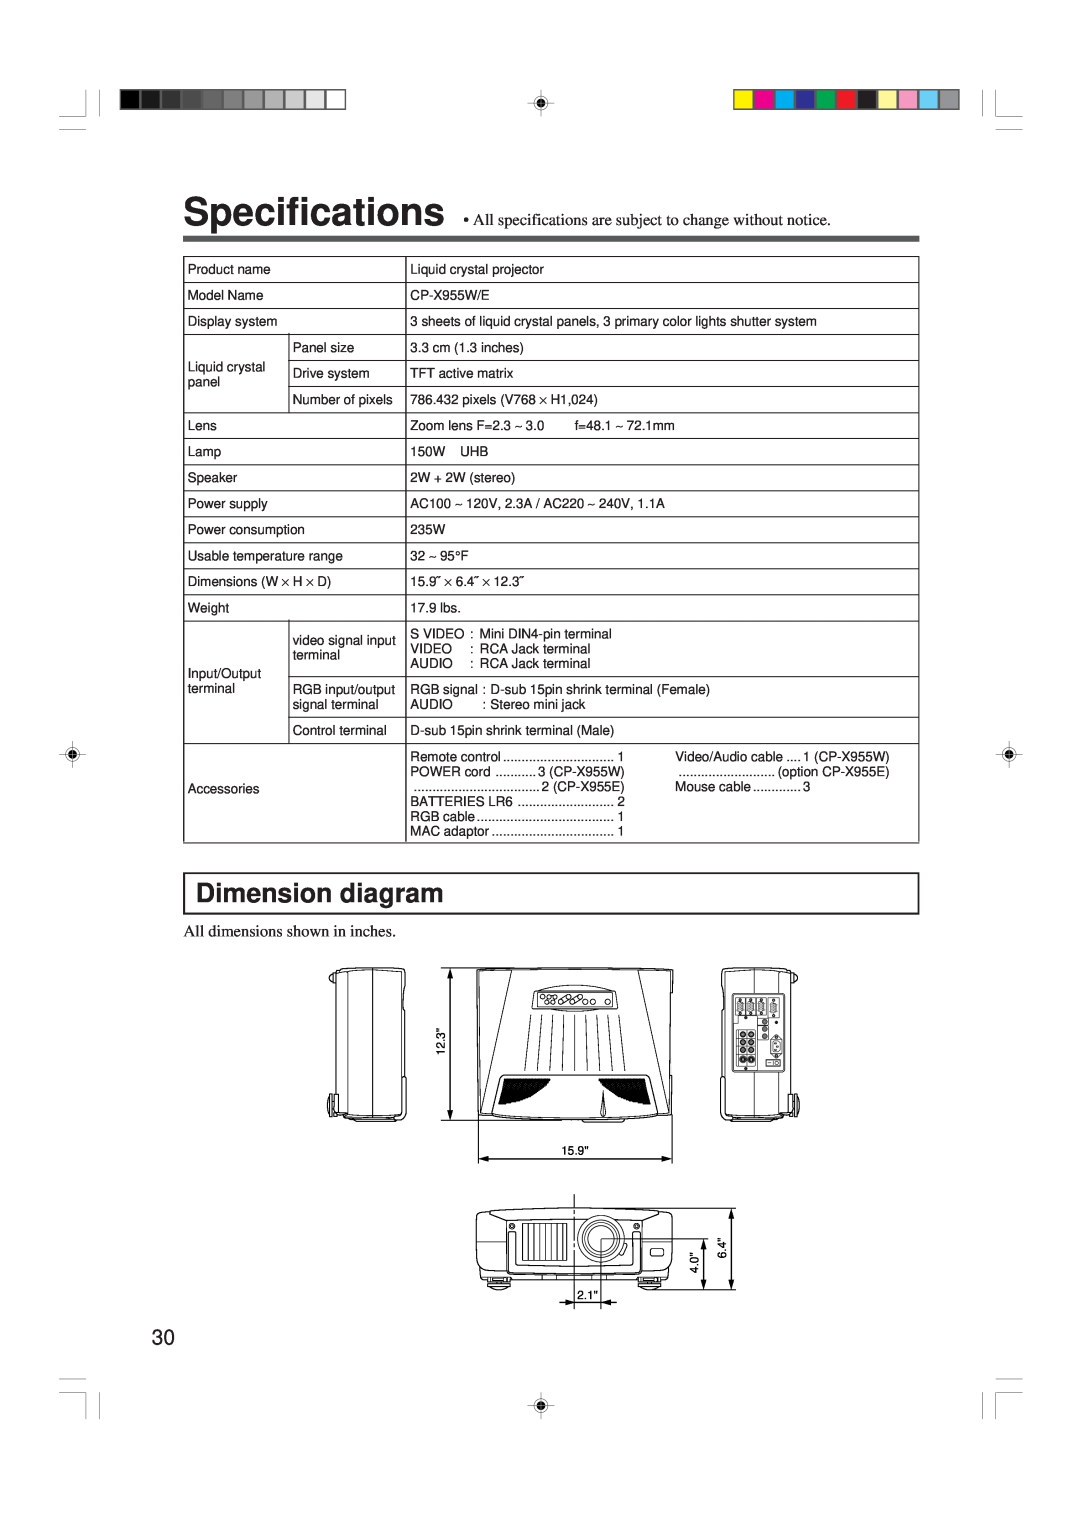 Hitachi CP-X955W/E specifications Dimension diagram, All dimensions shown in inches 